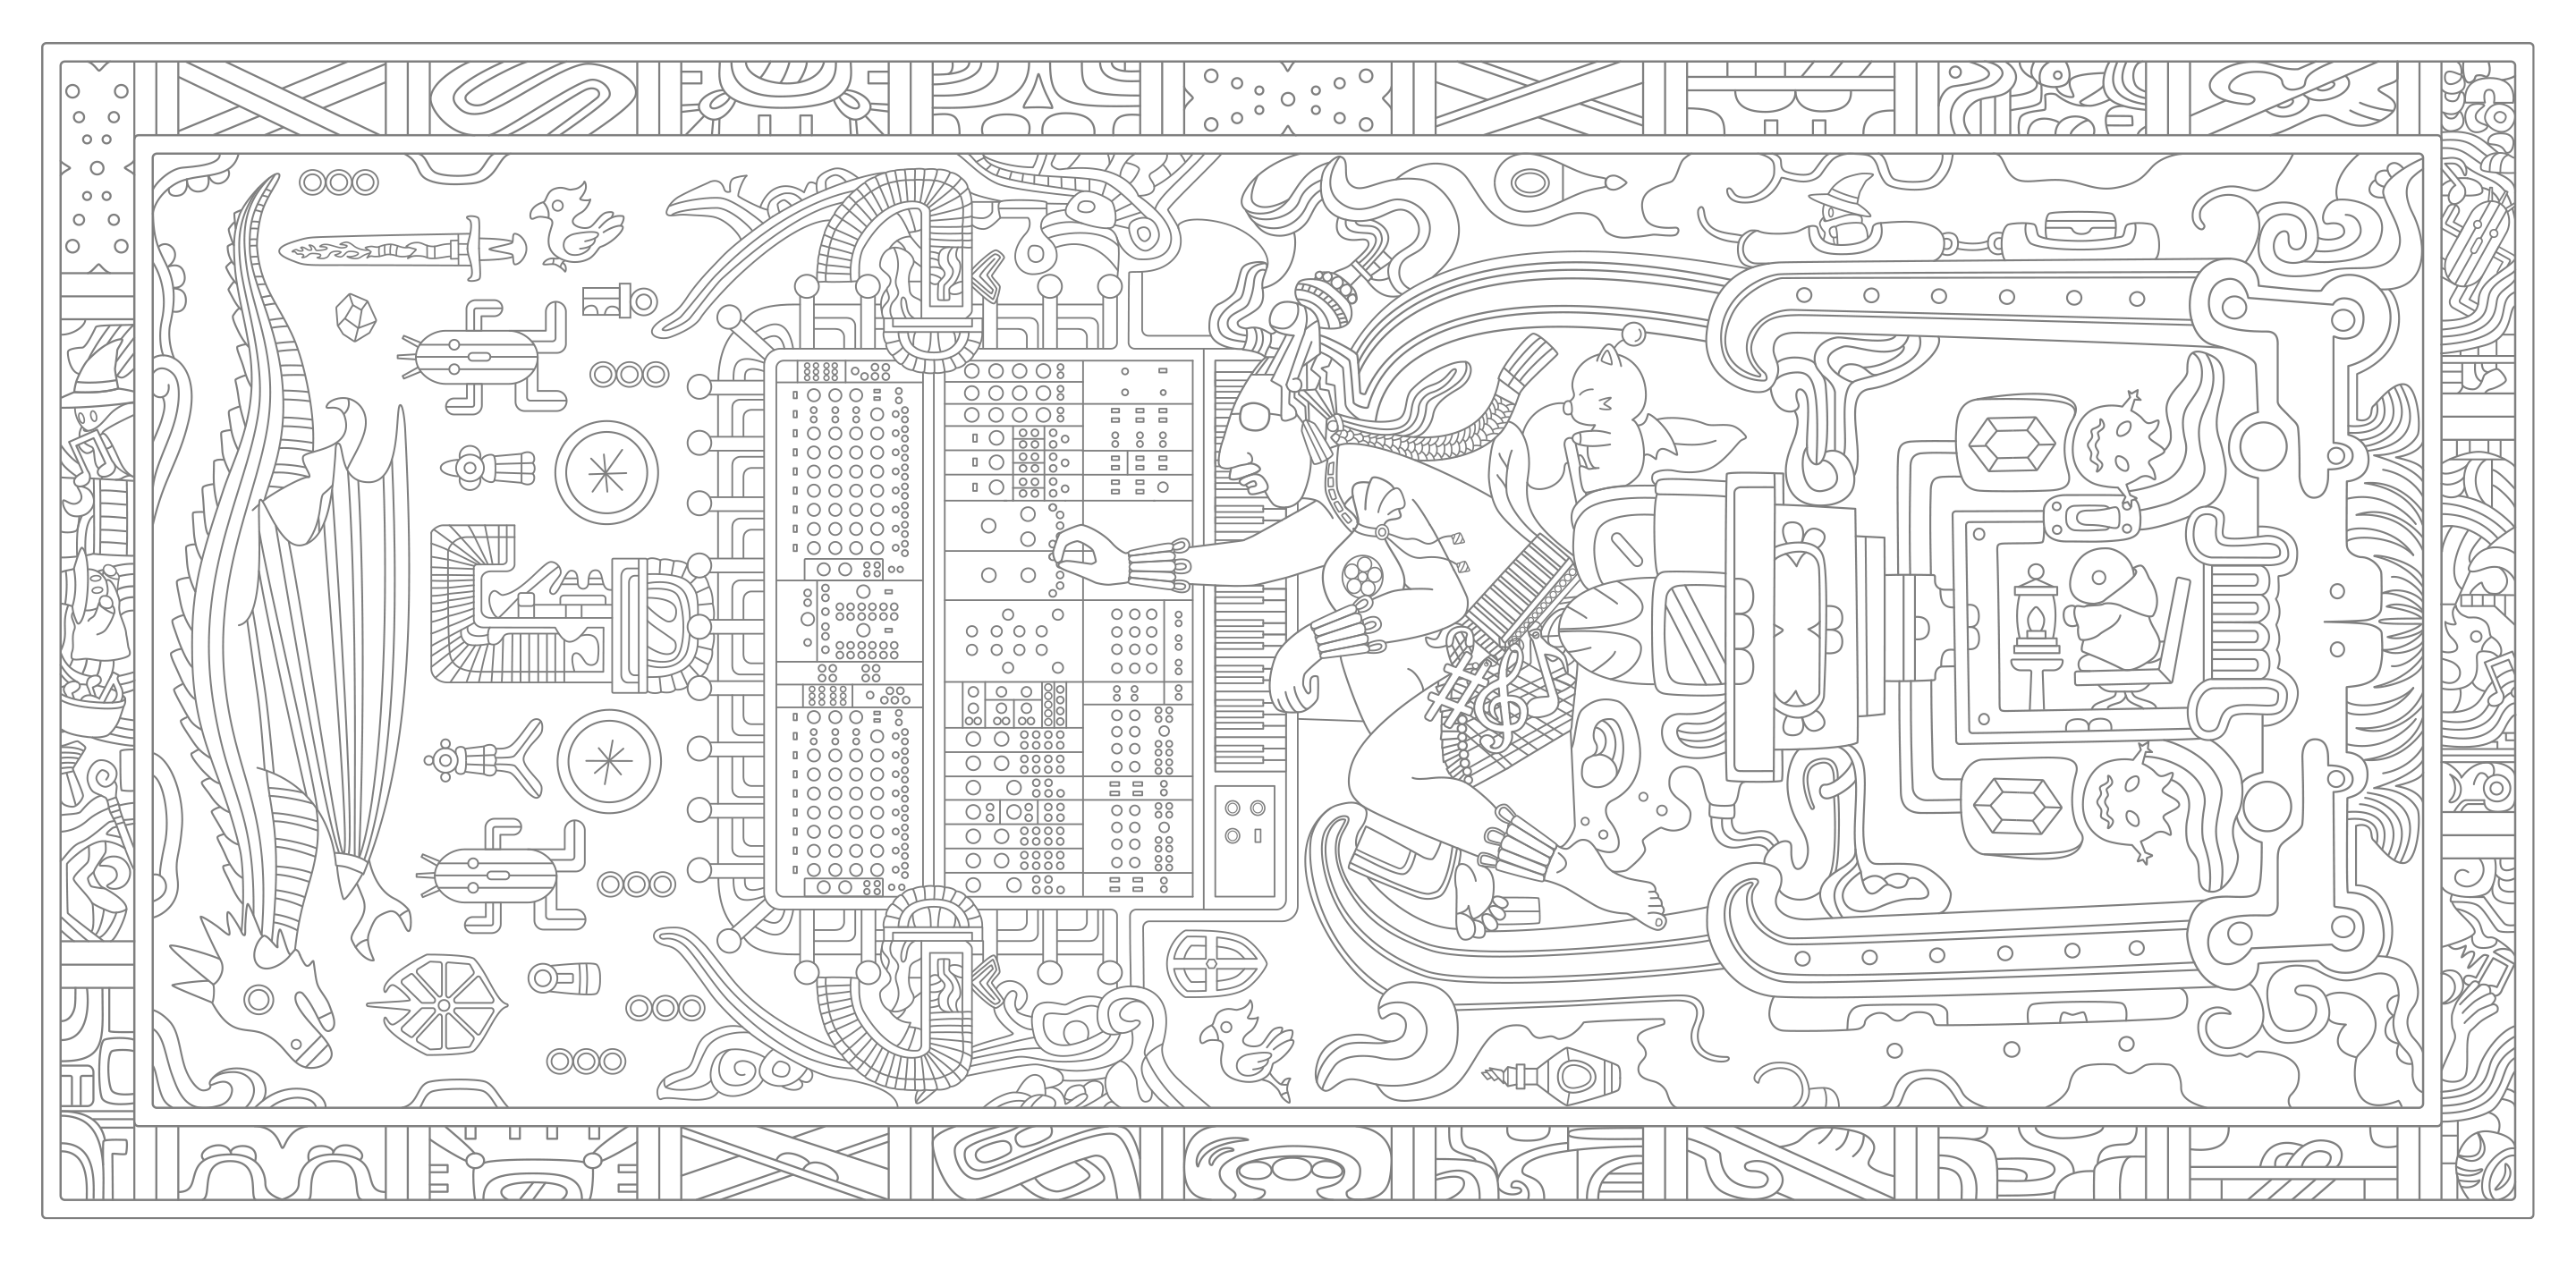 Una imagen clave para el próximo álbum de vinilo Modulation, que presenta obras de arte de un mesoamericano estilizado Nobuo Uematsu jugando con una máquina de música magitek mientras está rodeado de criaturas y objetos estilizados del universo de Final Fantasy, como bombas, un Moogle, cactuars, chocobos, un dragón, etc.